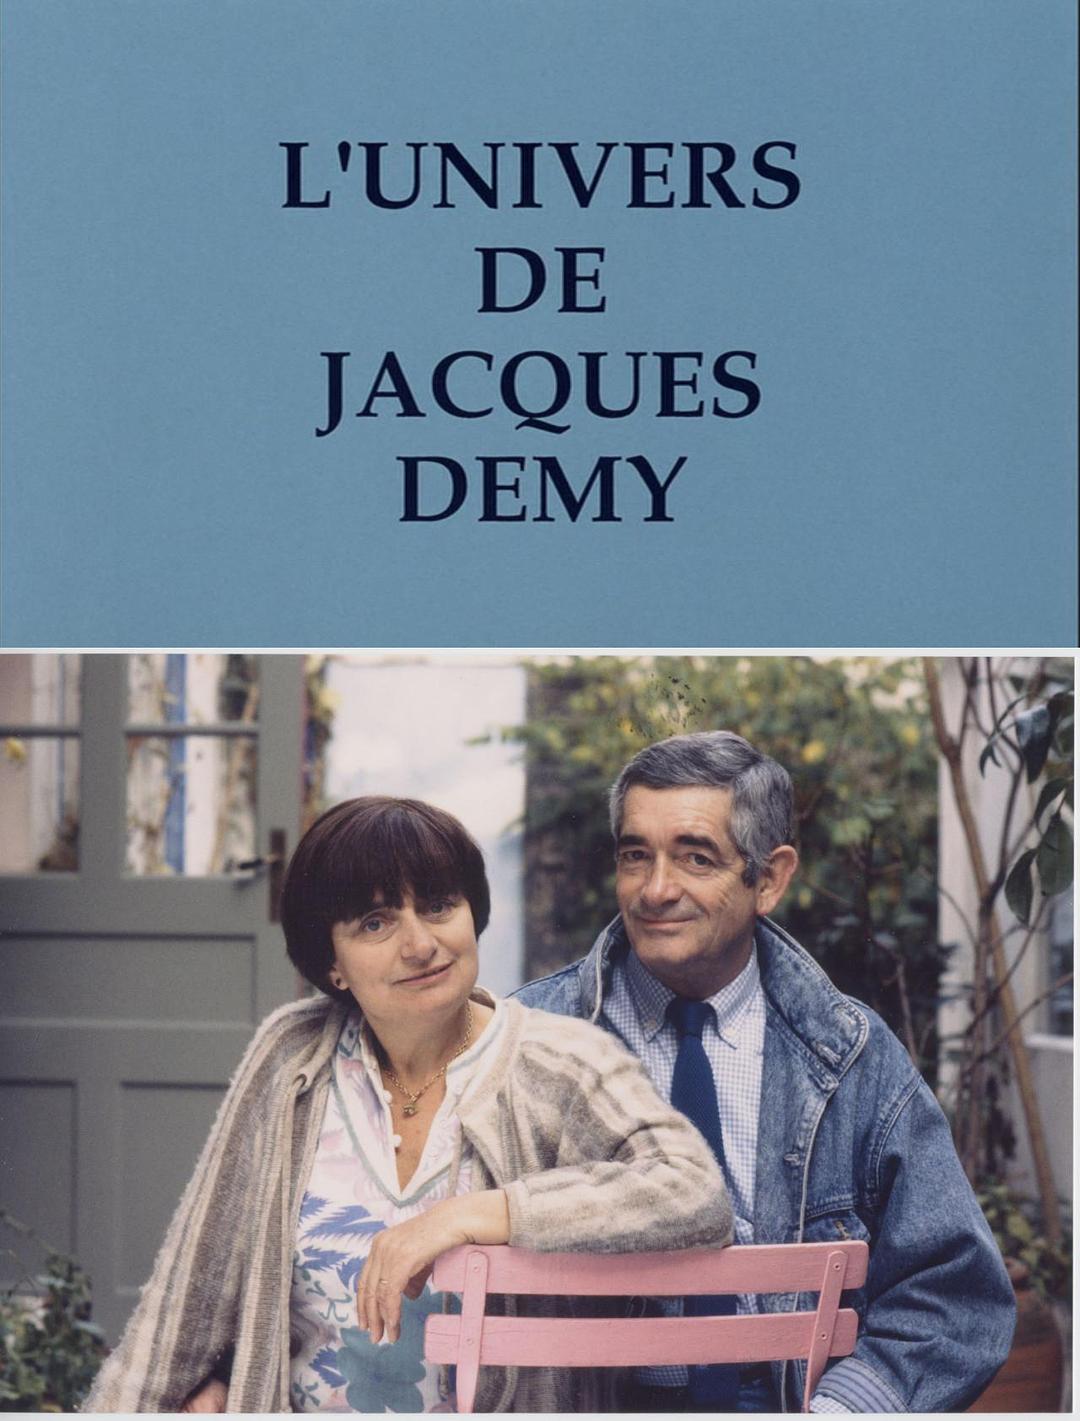 雅克·德米的天下 The.World.of.Jacques.Demy.1995.720p.BluRay.x264-BiPOLAR 3.28GB-1.png